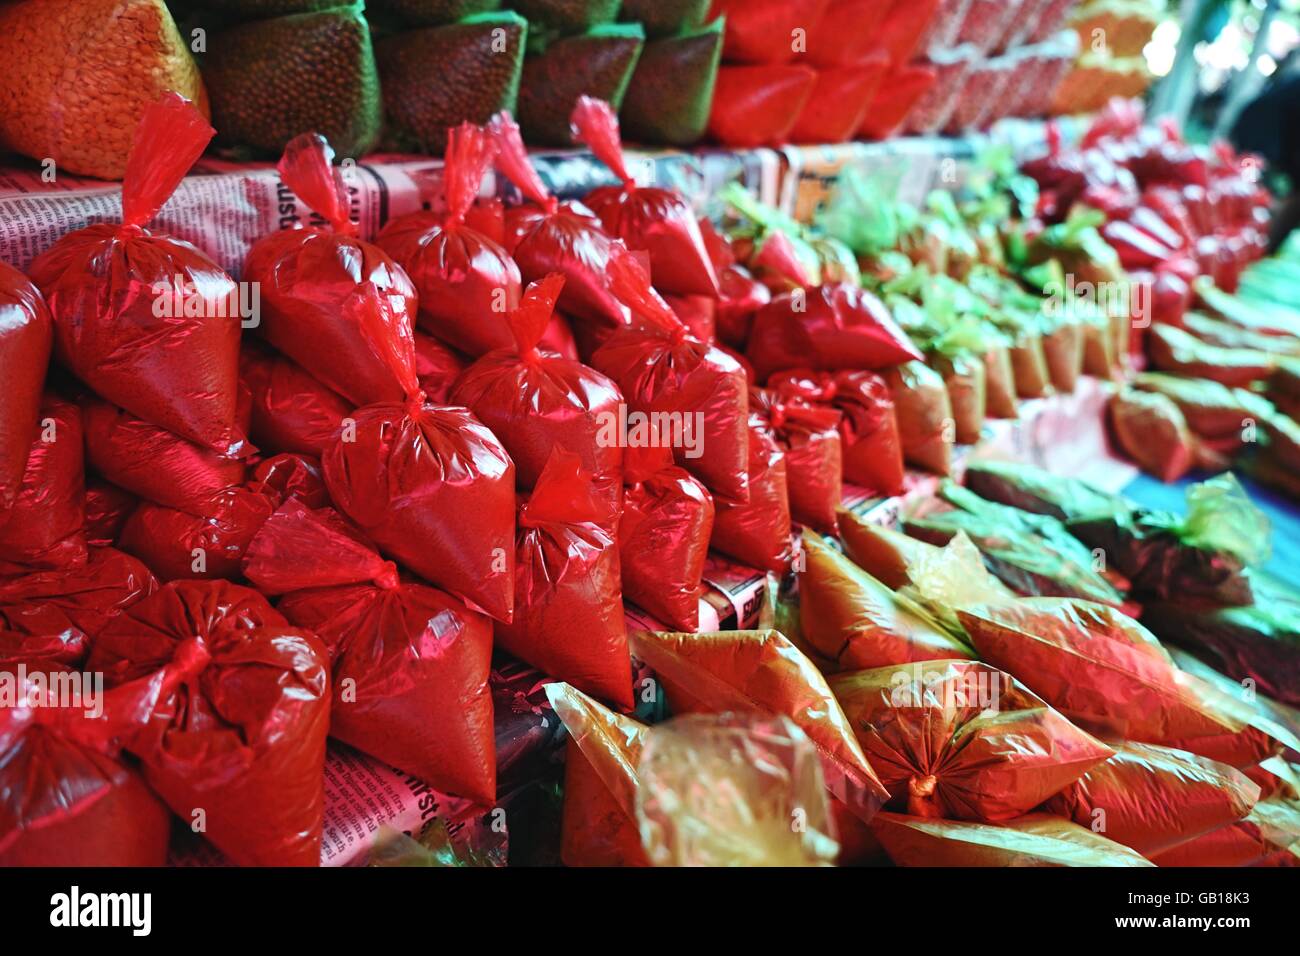 Épices et fines herbes la vente au marché de village local à Bentota Sri Lanka Asie du sud-est de sacs d'herbes comme la muscade, la cannelle et d'épices séchées chili Banque D'Images